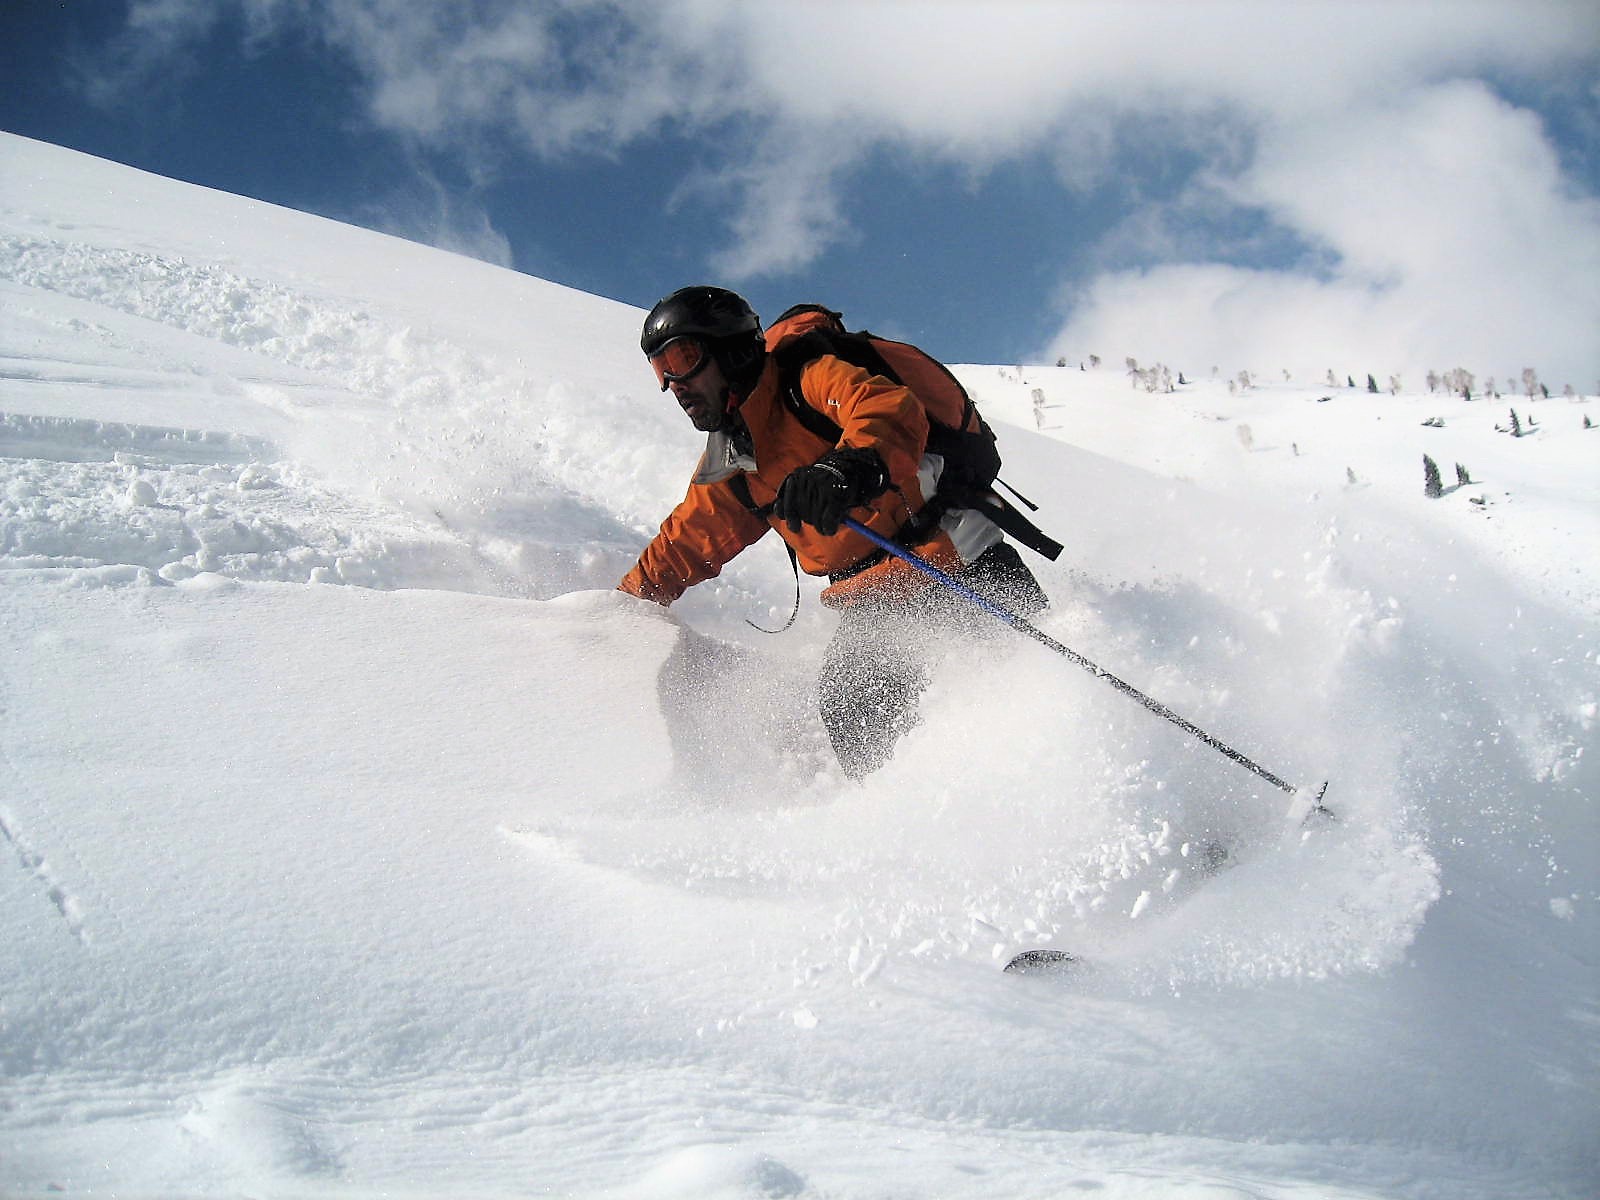 Mr. Akshay Kumar skiing